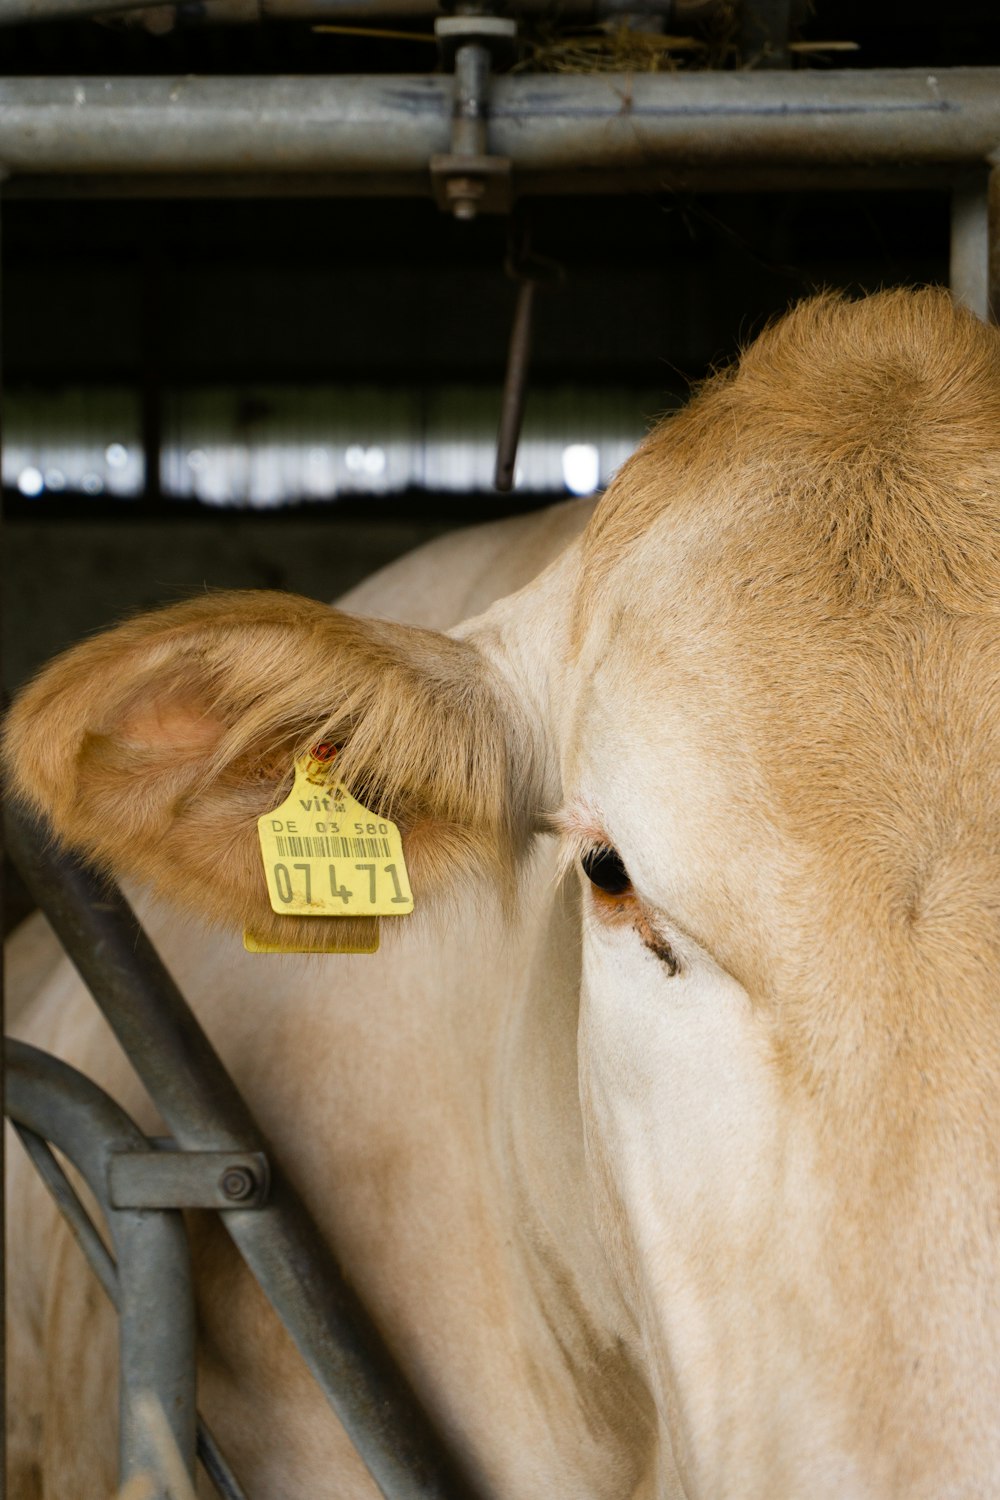 a close up of a cow with a tag on it's ear